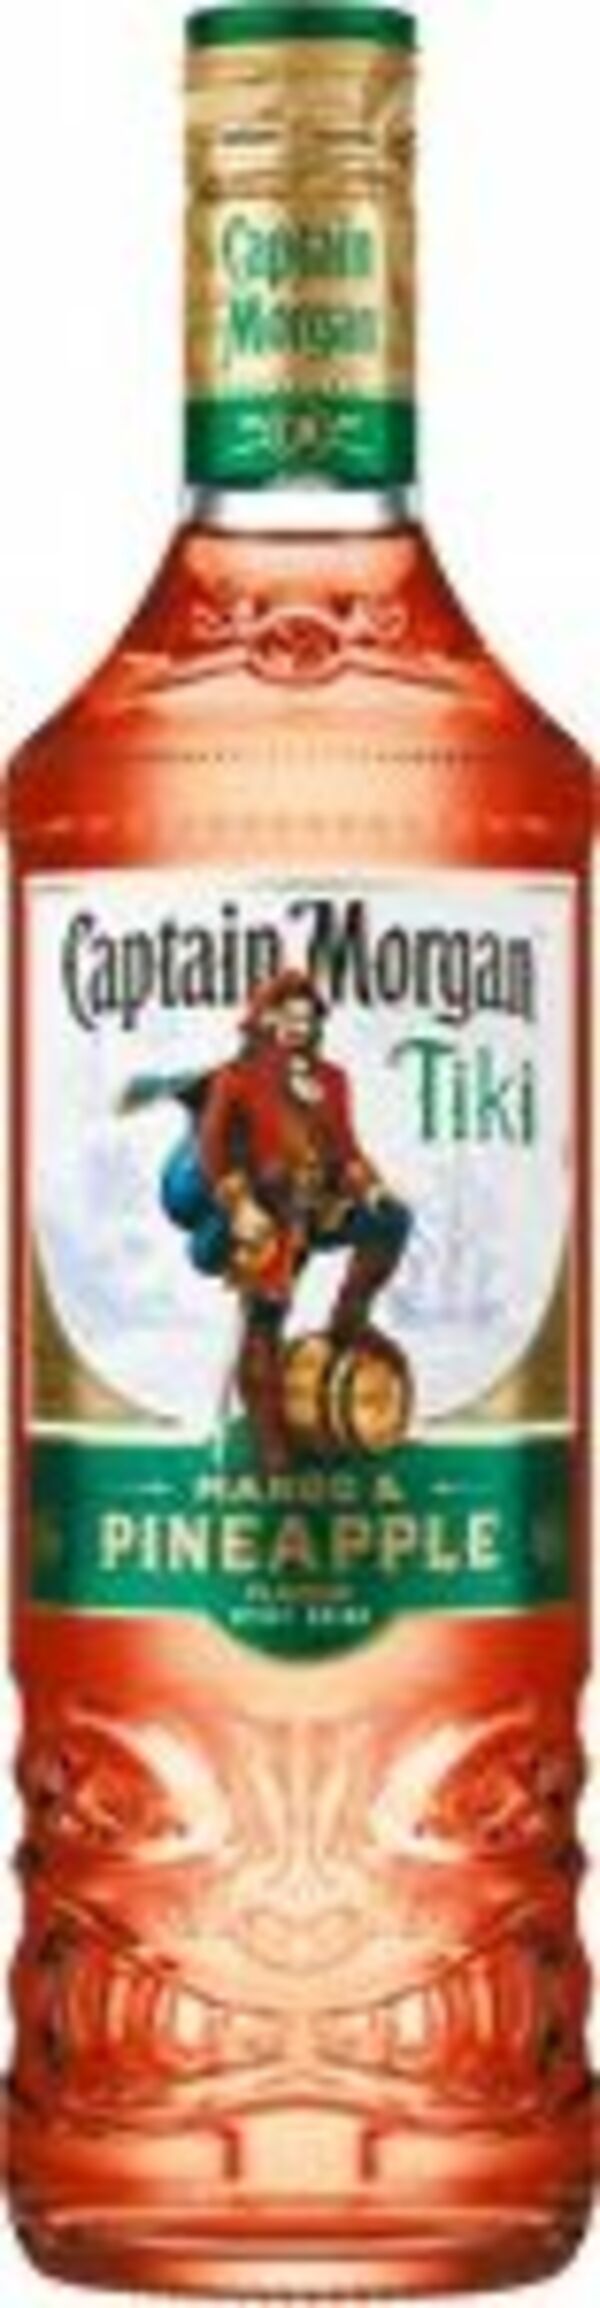 Bild 1 von Captain Morgan Spiced Gold oder Tiki Mango & Pineapple Rum